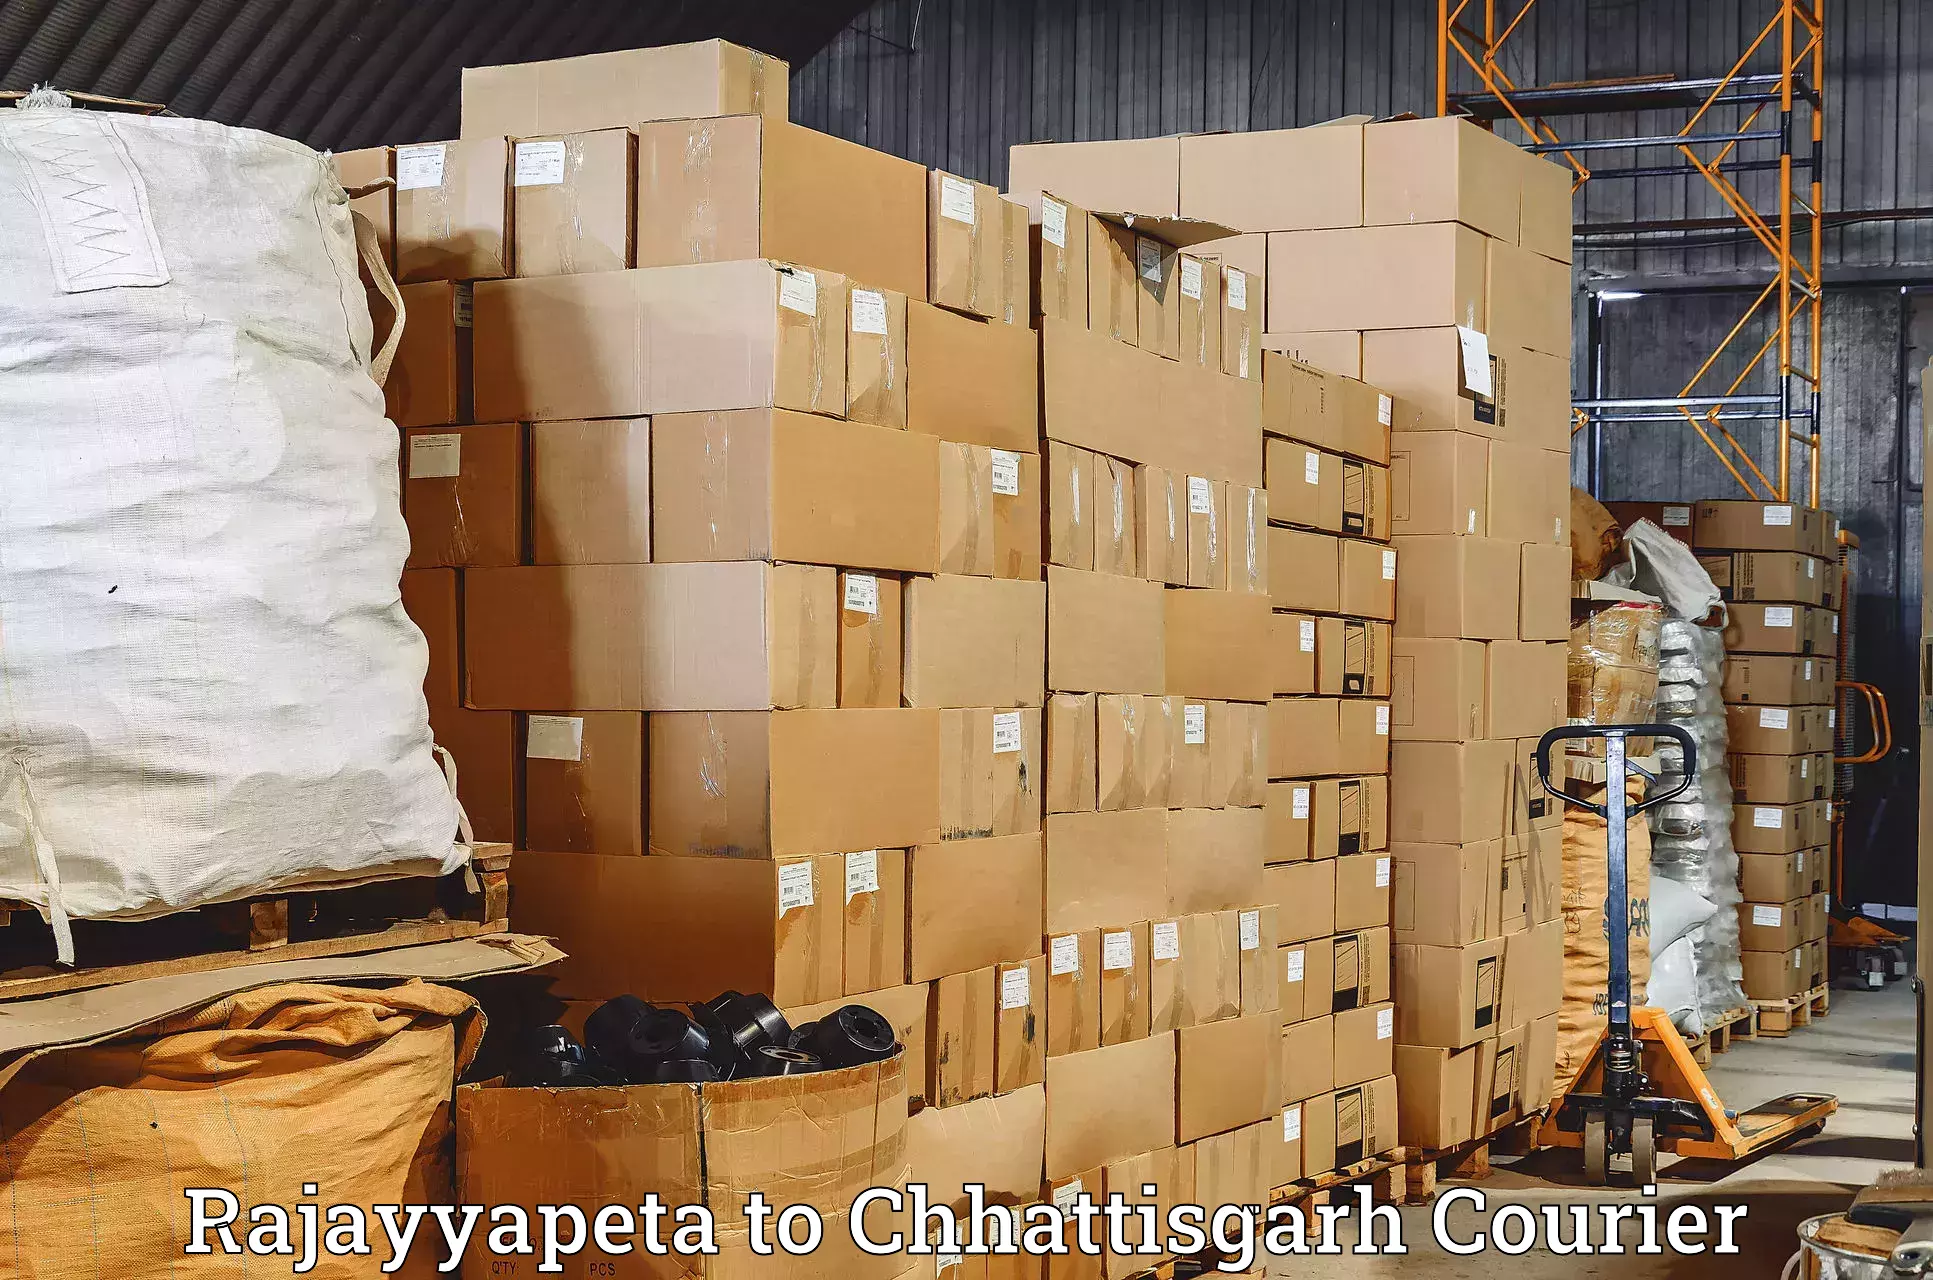 Fast delivery service Rajayyapeta to Chhattisgarh